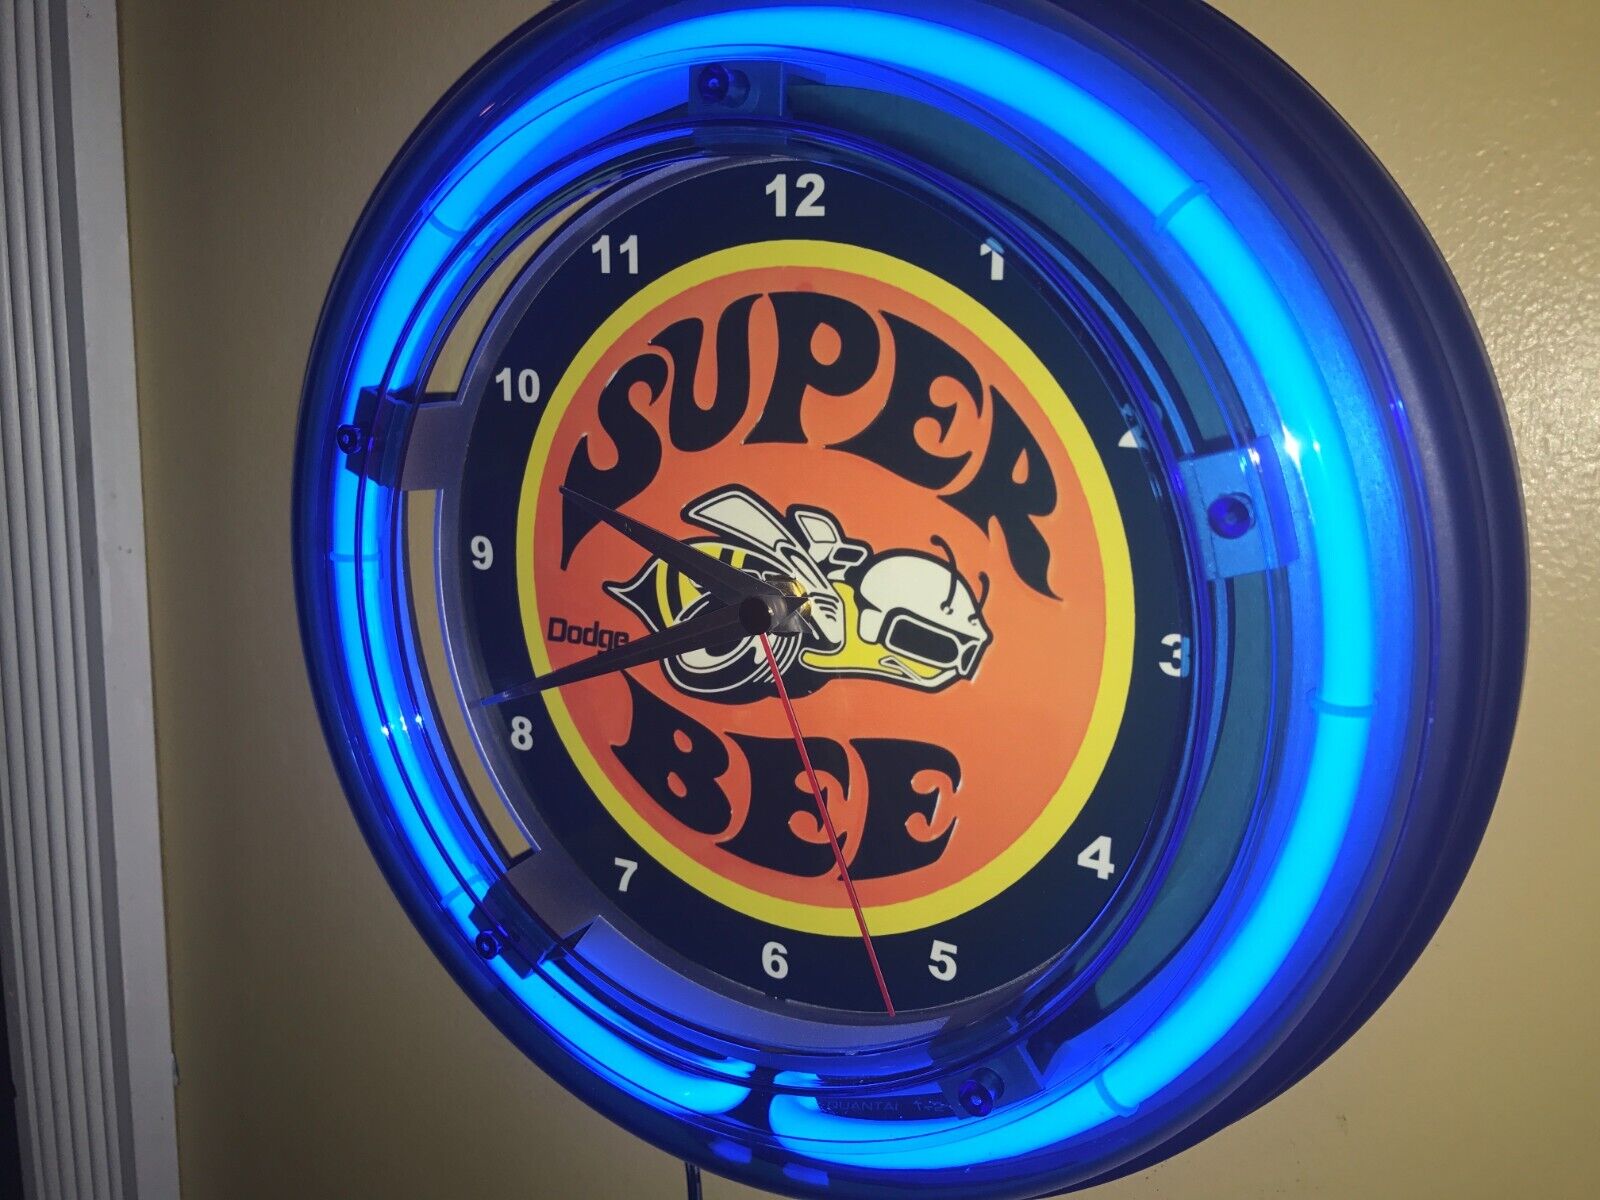 Dodge Super Bee Hemi Mopar Motors Auto Man Cave Neon Wall Clock Advertising Sign